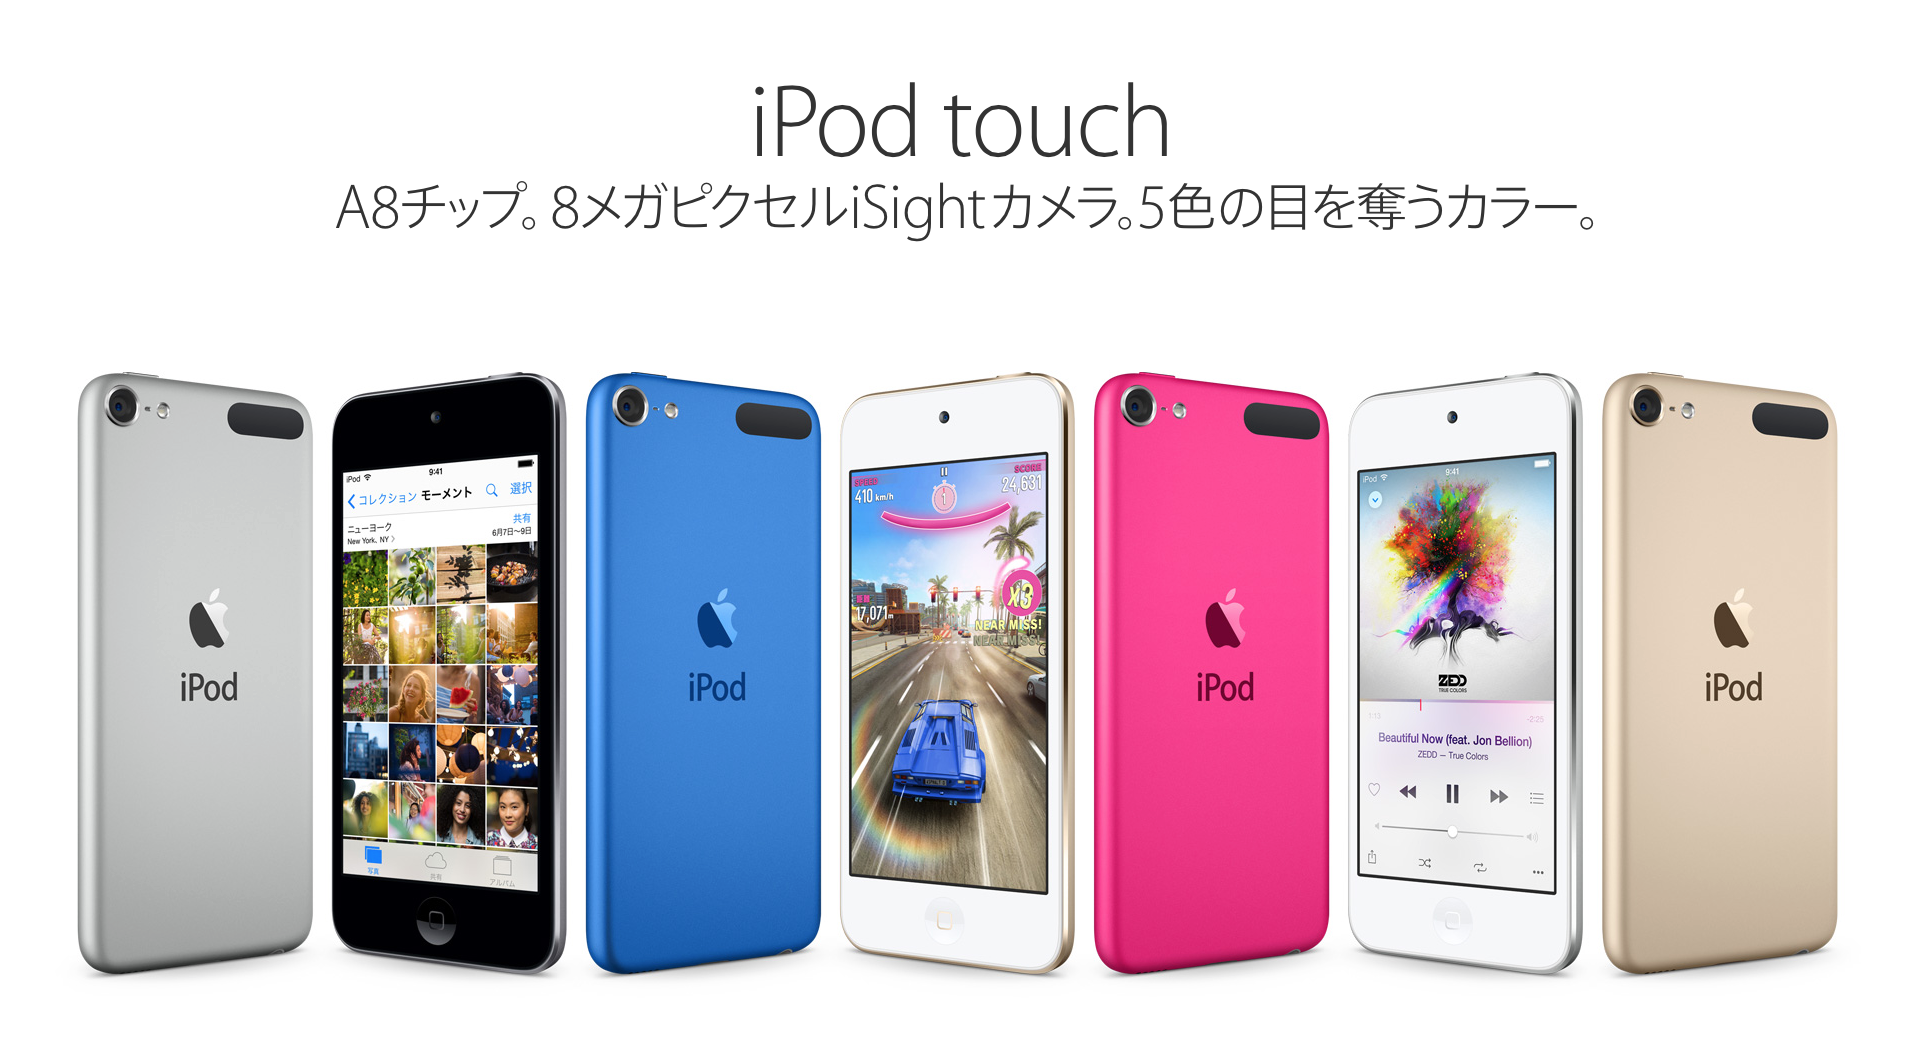 第6世代iPod Touchと前モデルとの違いは?性能や価格、色など比較してみた | SmCo memory